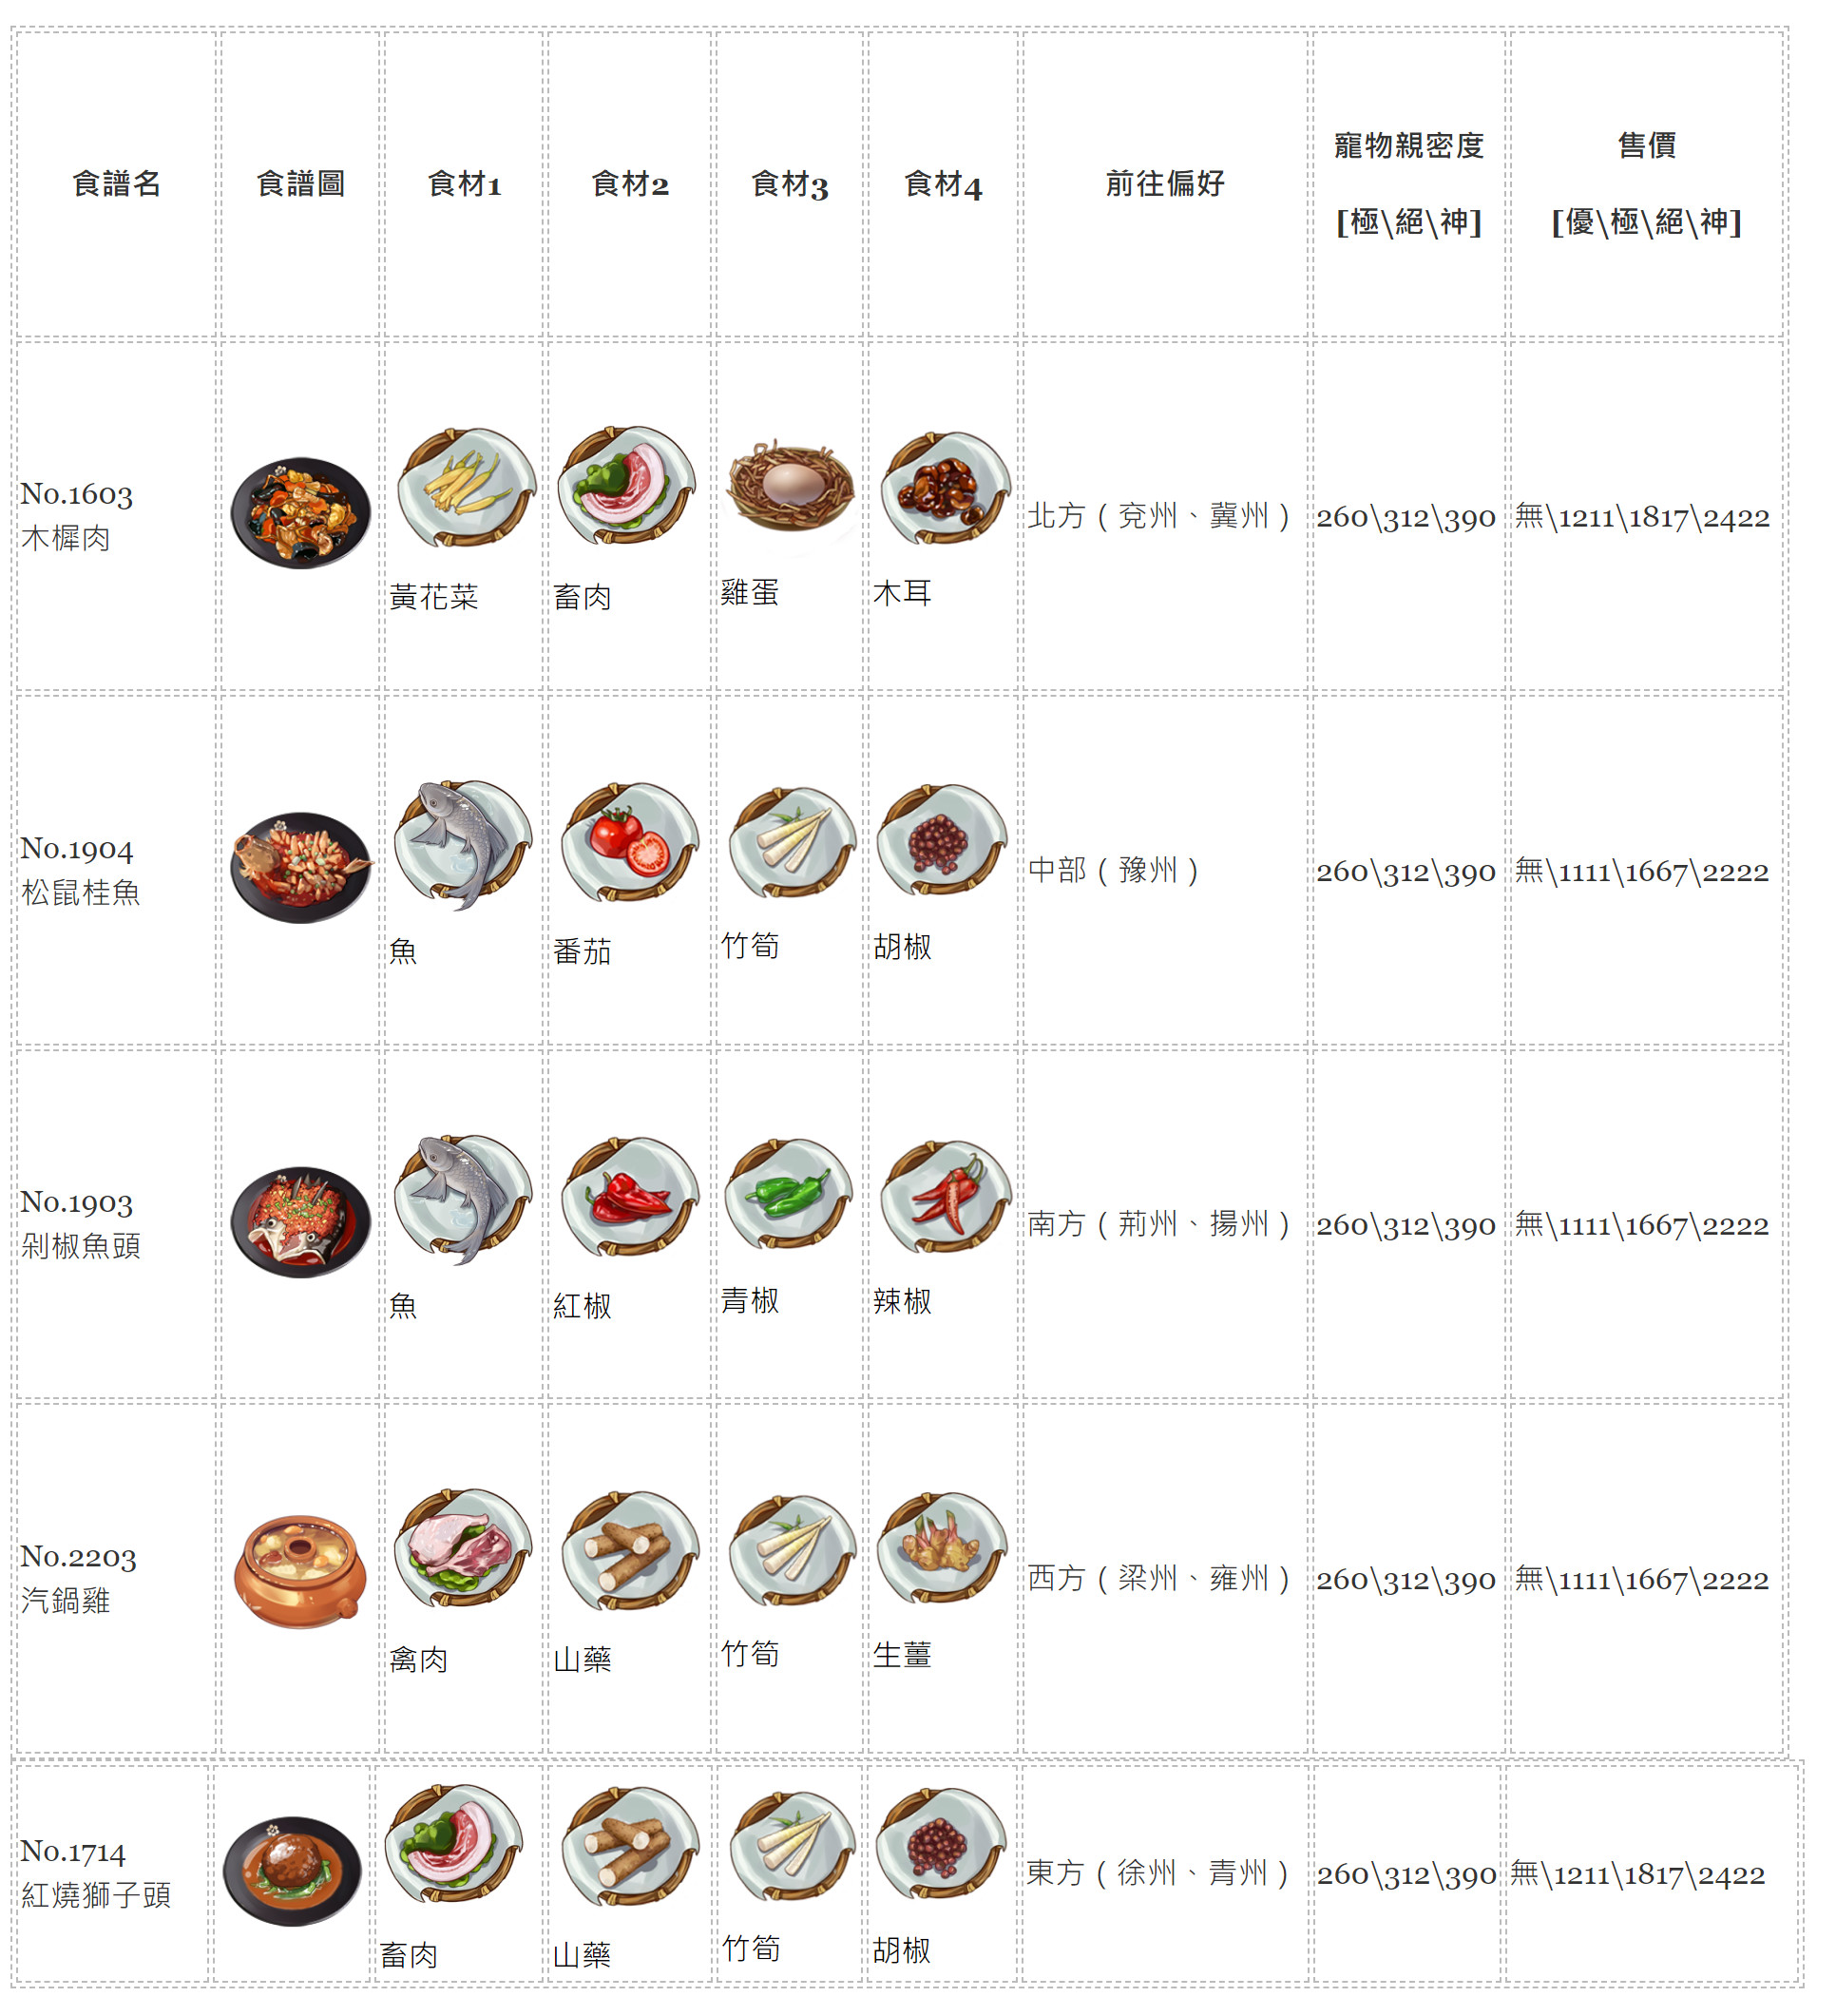 【江湖悠悠】料理食譜大全，1~11完美料理配方、普通食材食譜、旅行方向、寵物糧親密度、料理售價。 - 完美 - 敗家達人推薦